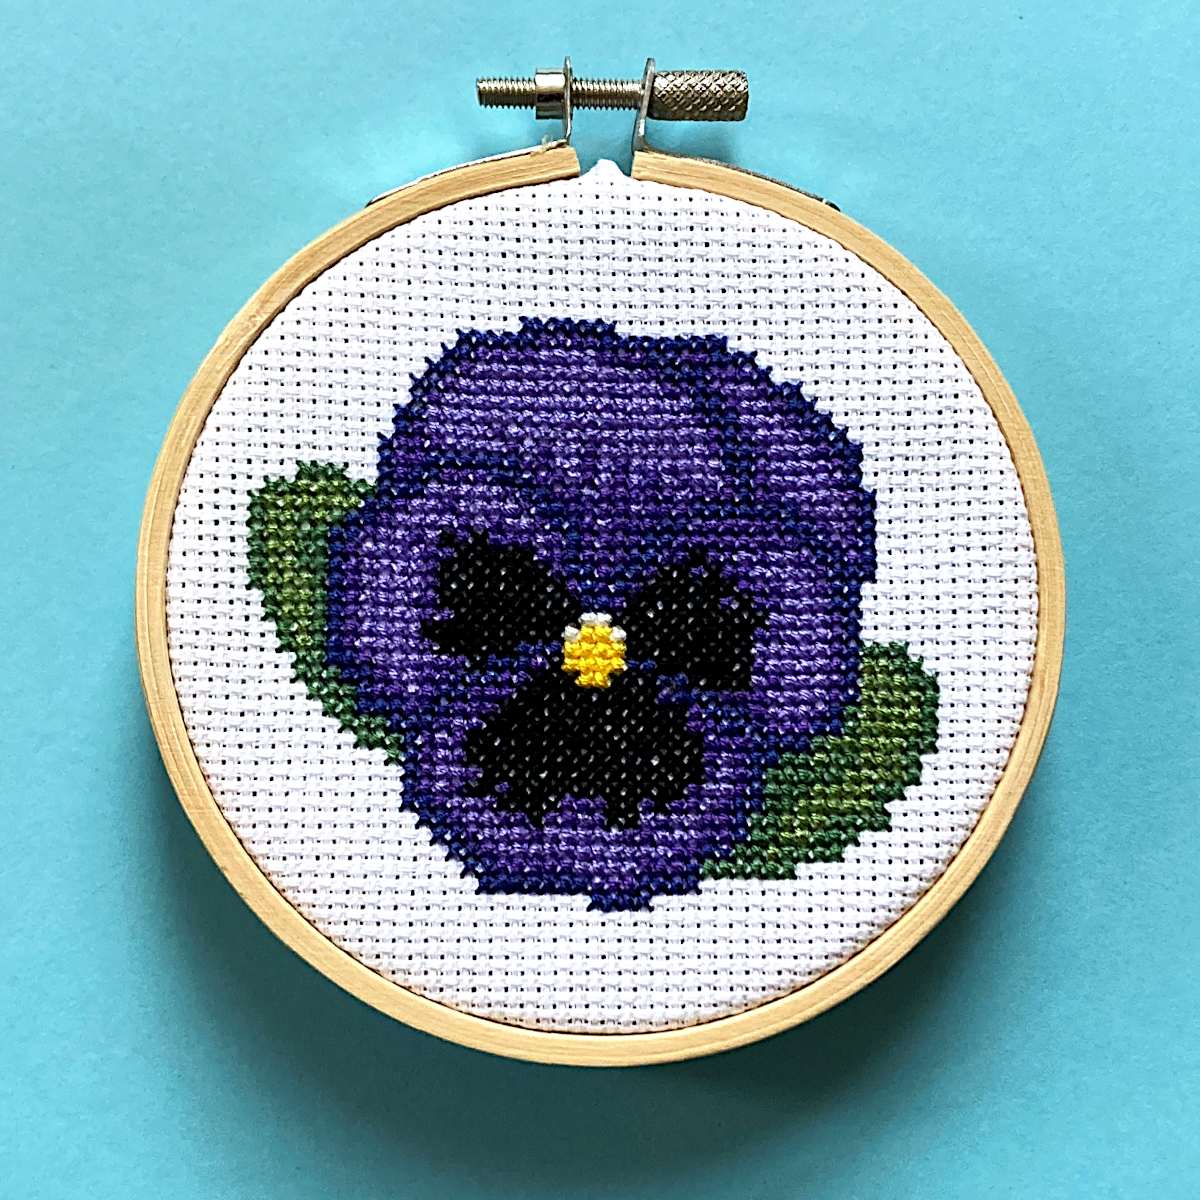 blue-purple pansy cross stitch in hoop